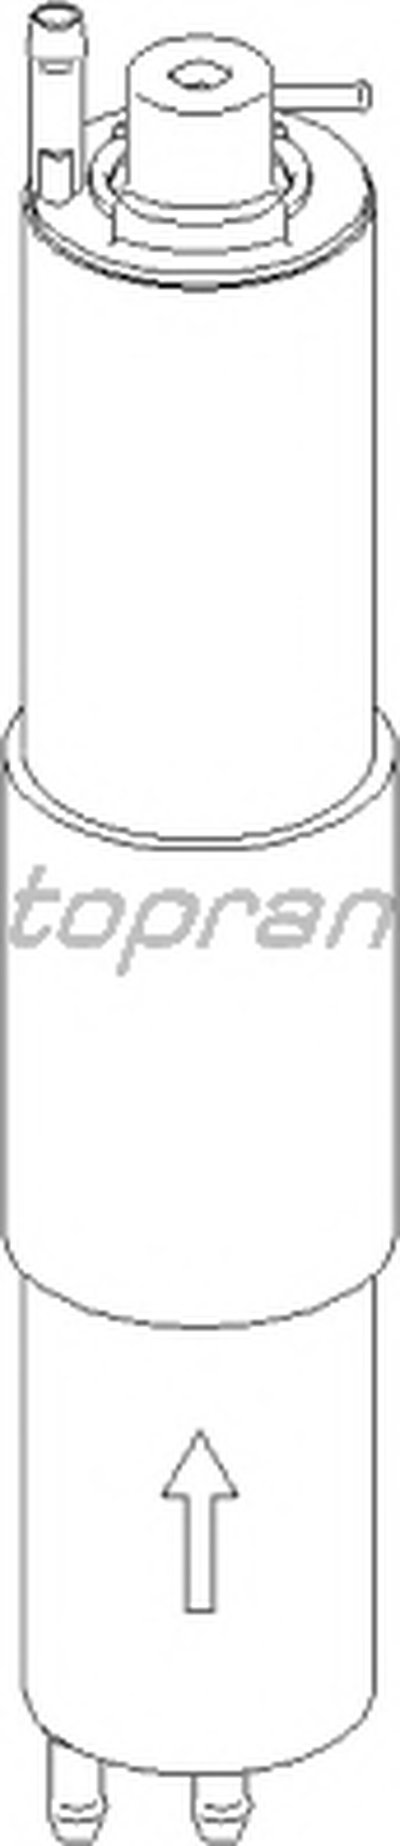 Топливный фильтр TOPRAN купить